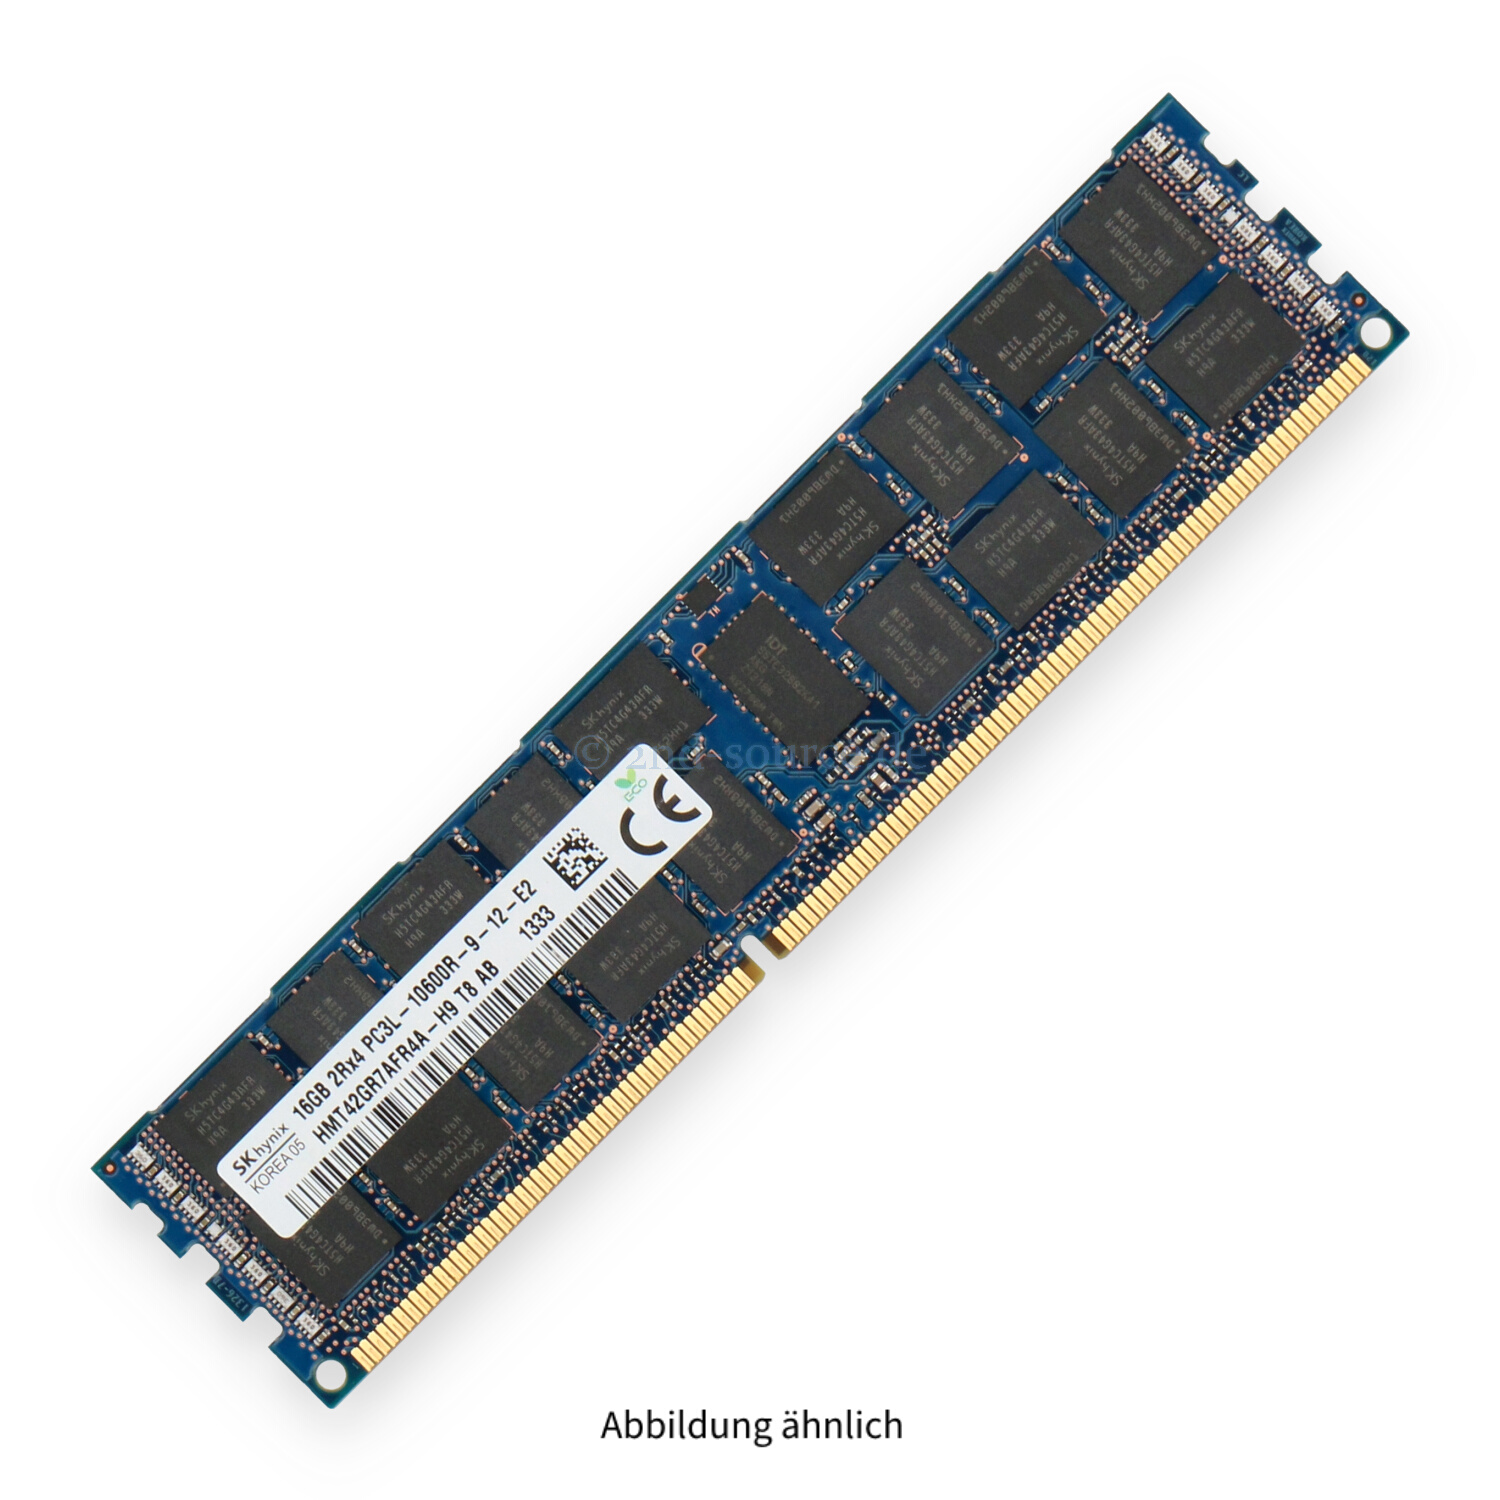 Hynix 16GB PC3L-10600R DIMM Dual Rank x4 (DDR3-1333) Registered ECC HMT42GR7AFR4A-H9